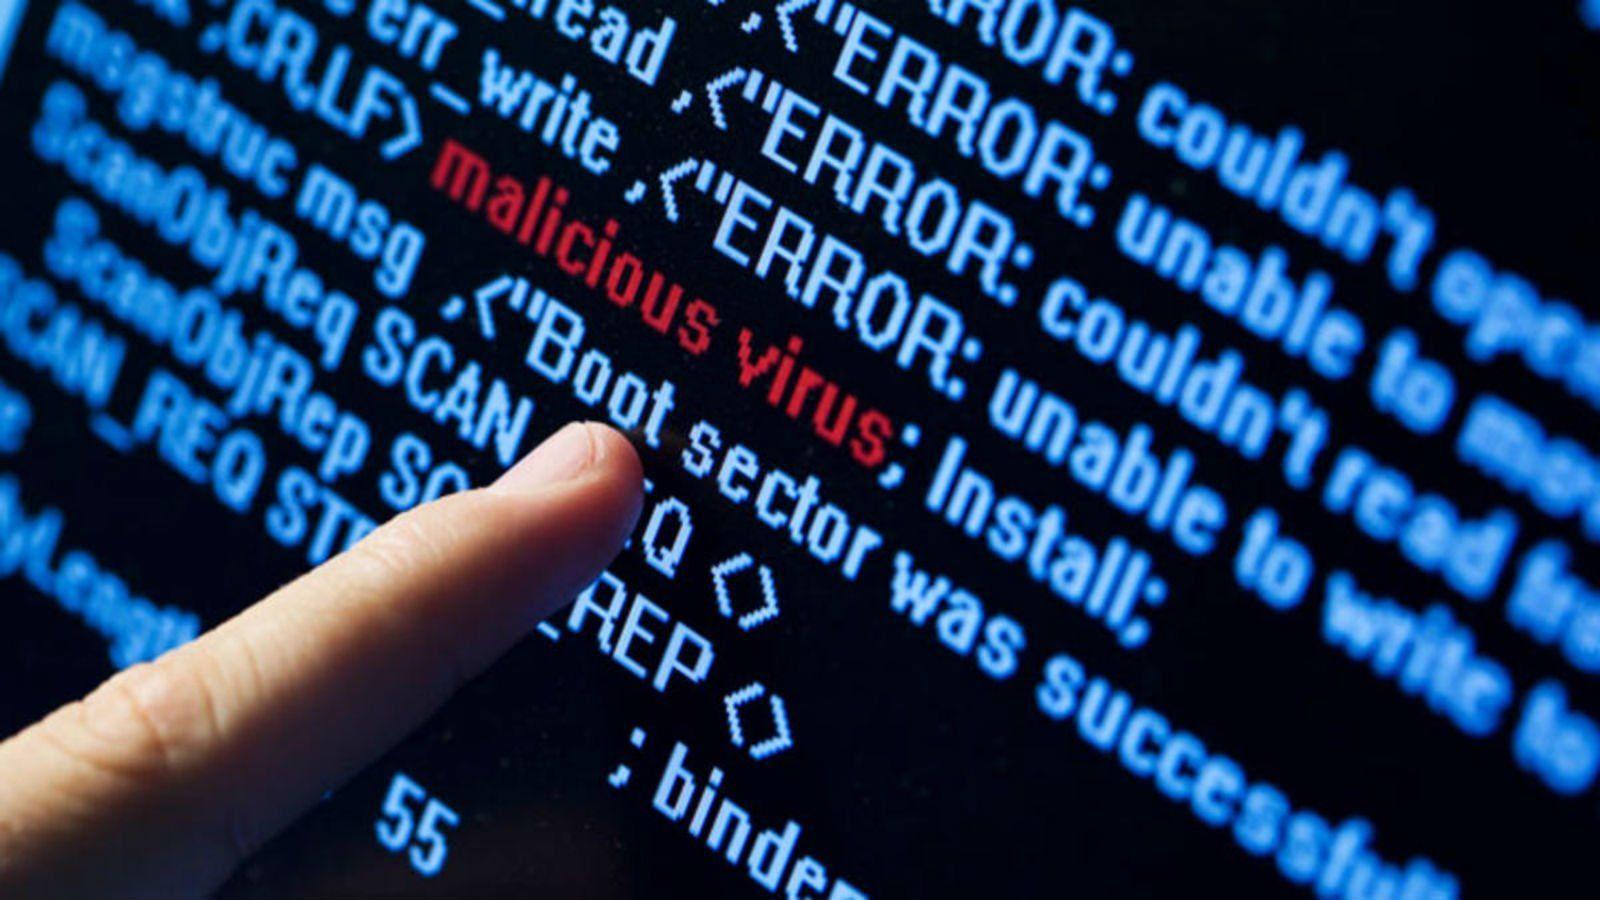 Computer virus danger hacking hacker internet sadic (4) wallpaper